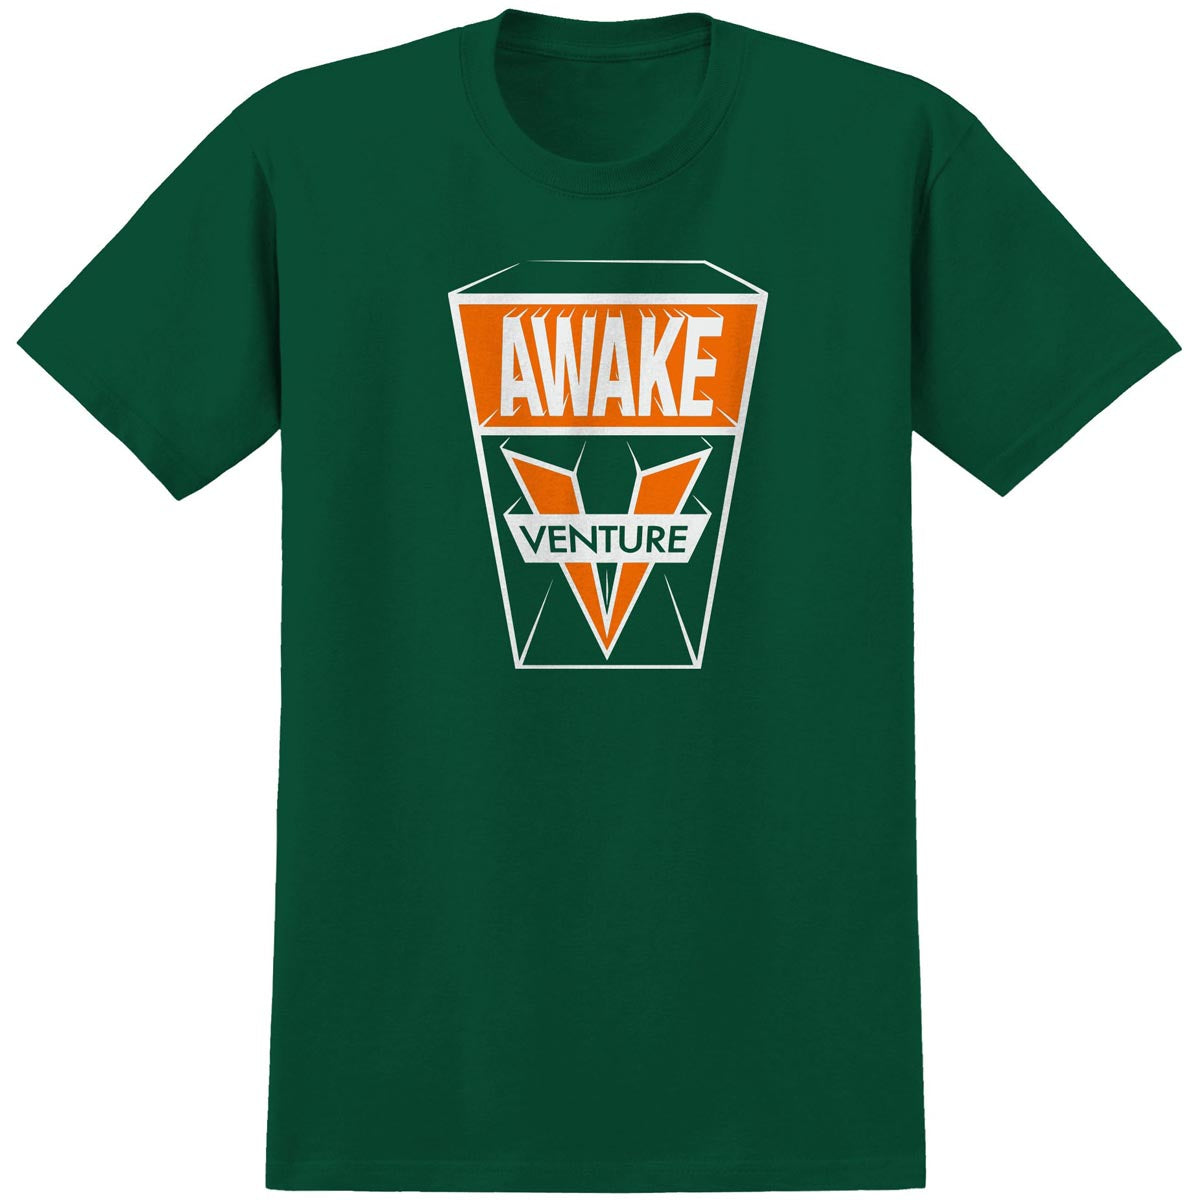 Venture Awake 3D T-Shirt - Forest Green image 1